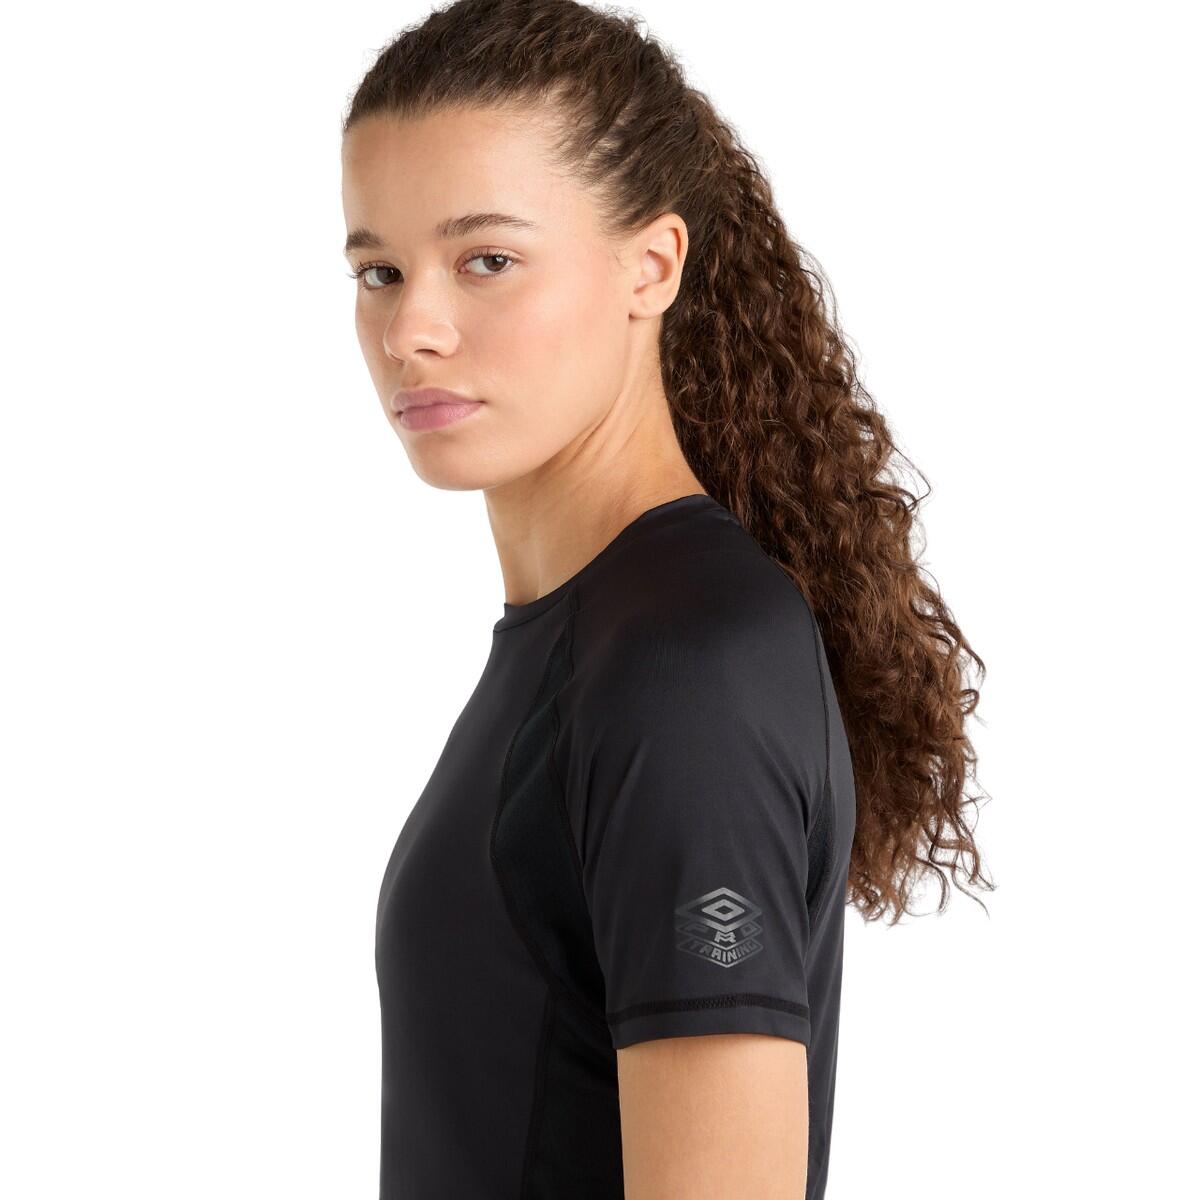 Womens/Ladies Pro Training Polyester TShirt (Black) 4/4